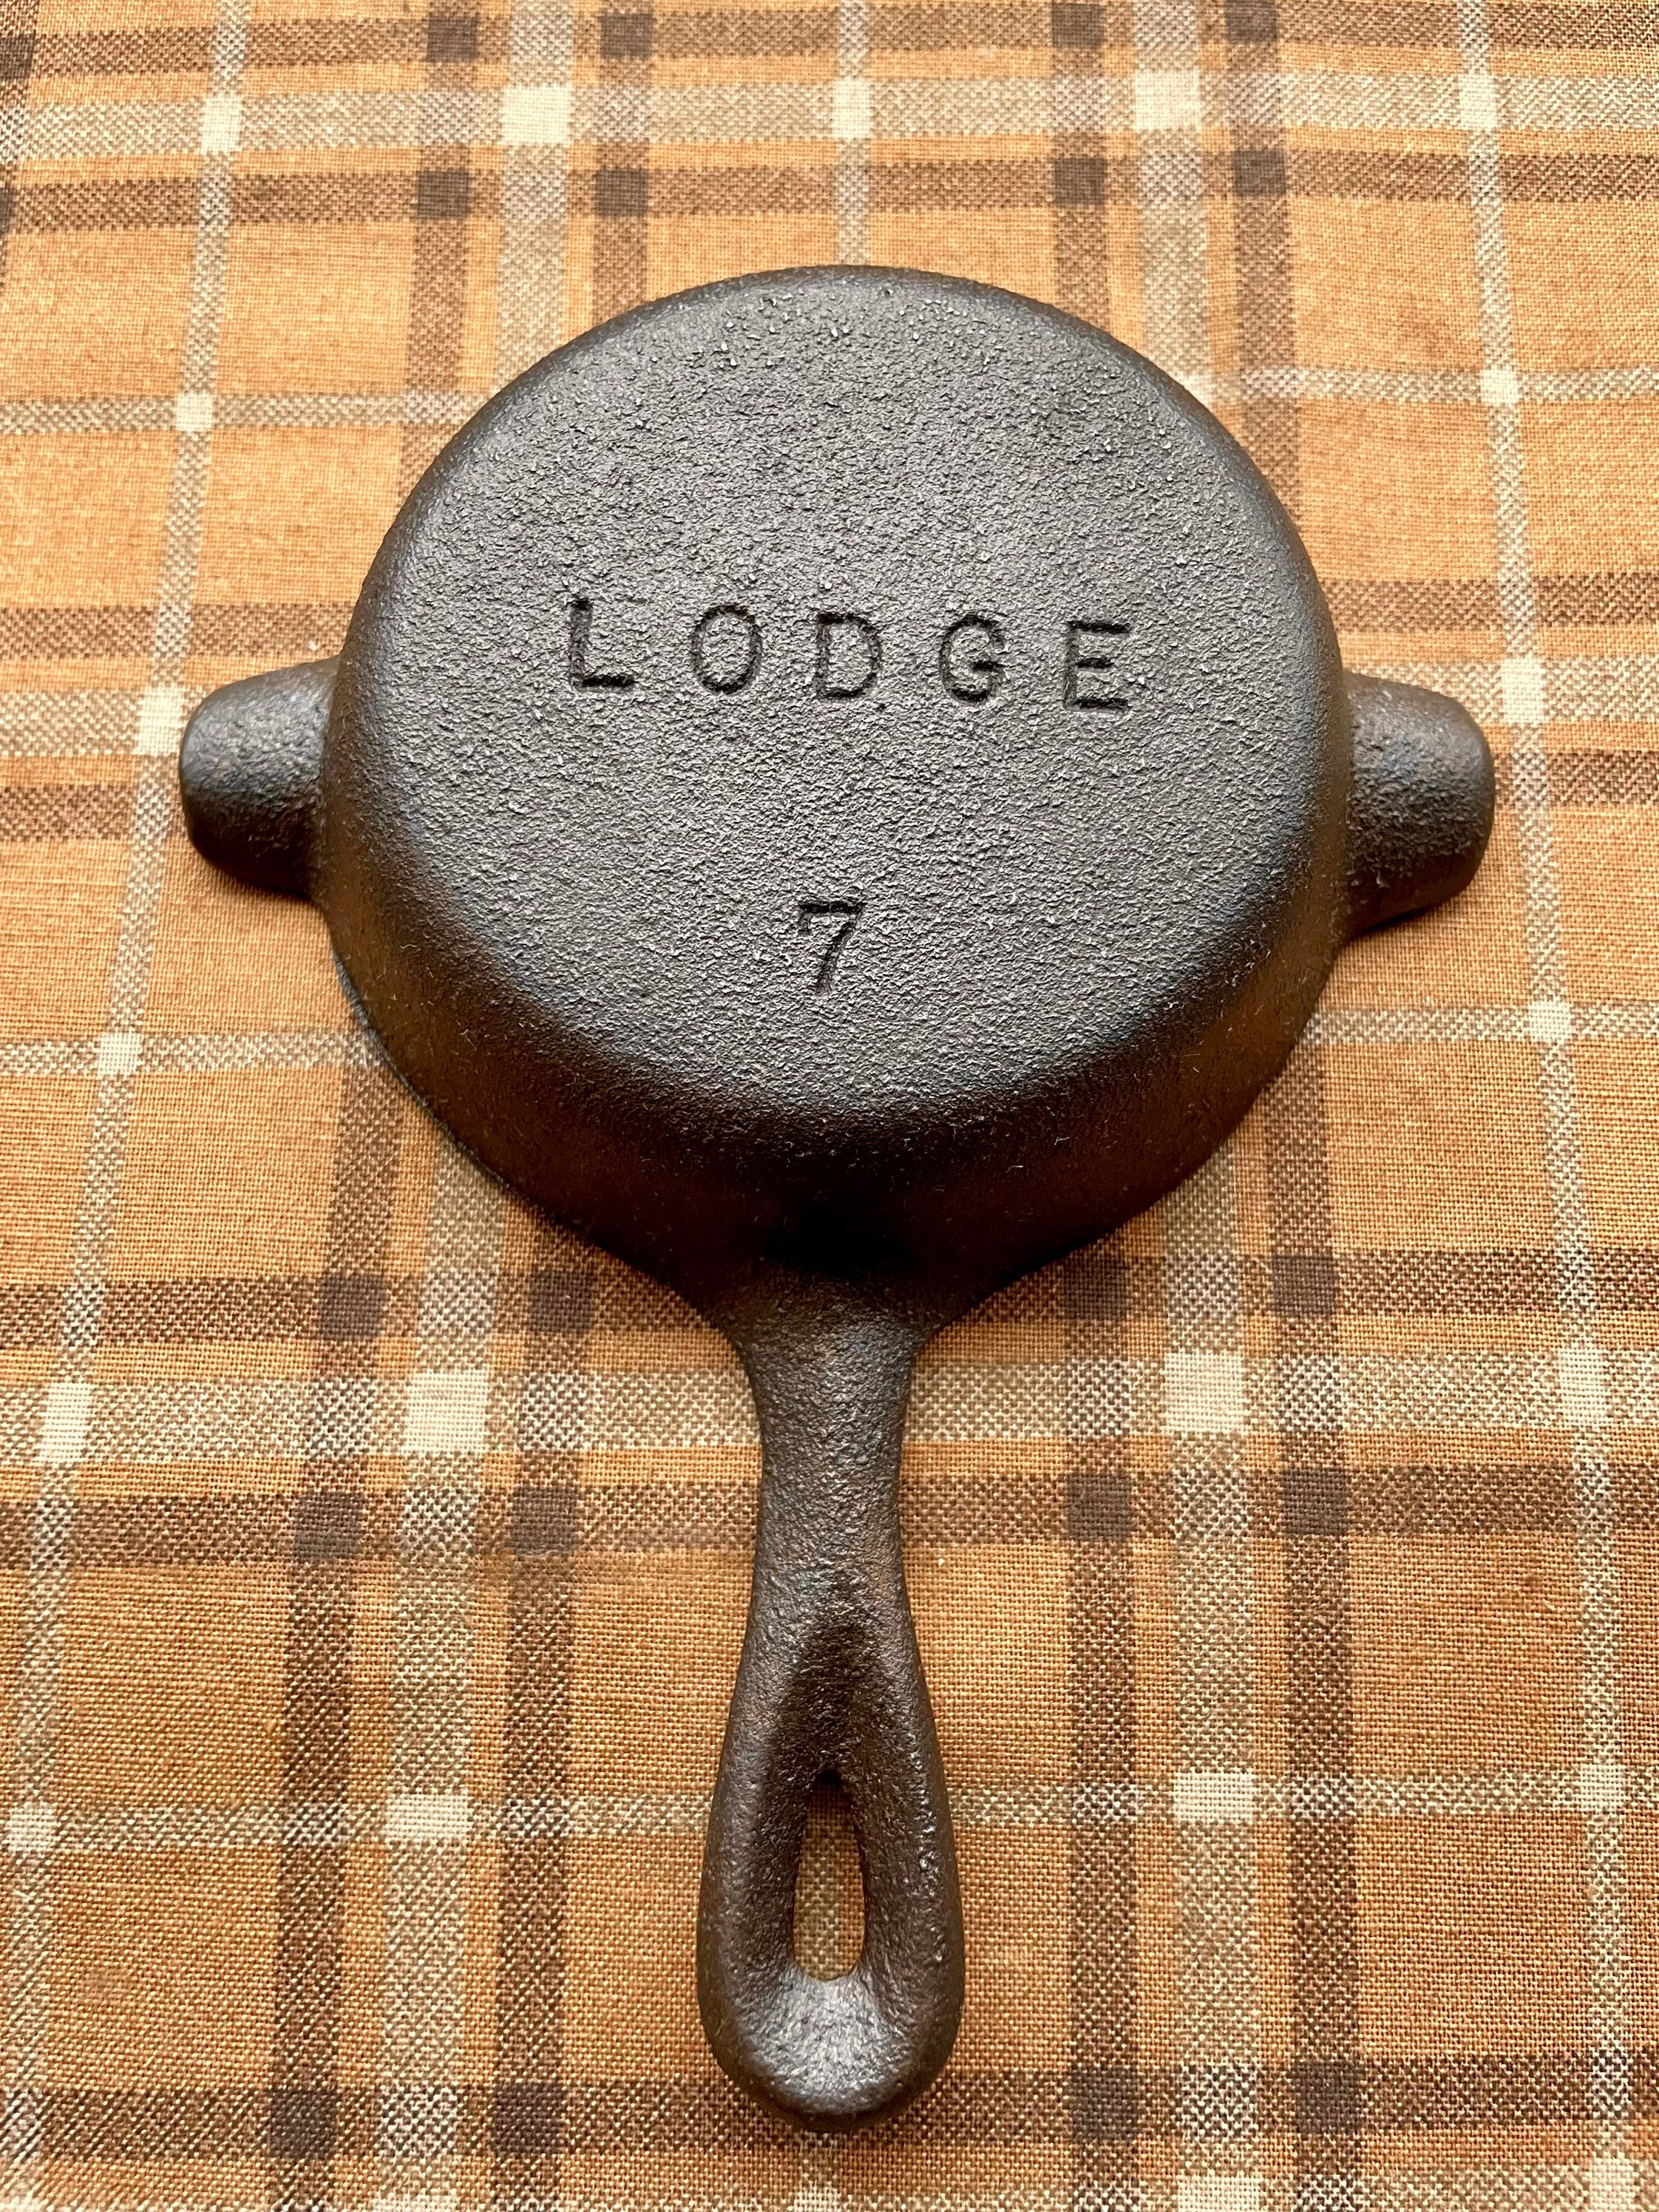 Lodge 5-Piece Cast Iron Cookware Set - Cracker Barrel